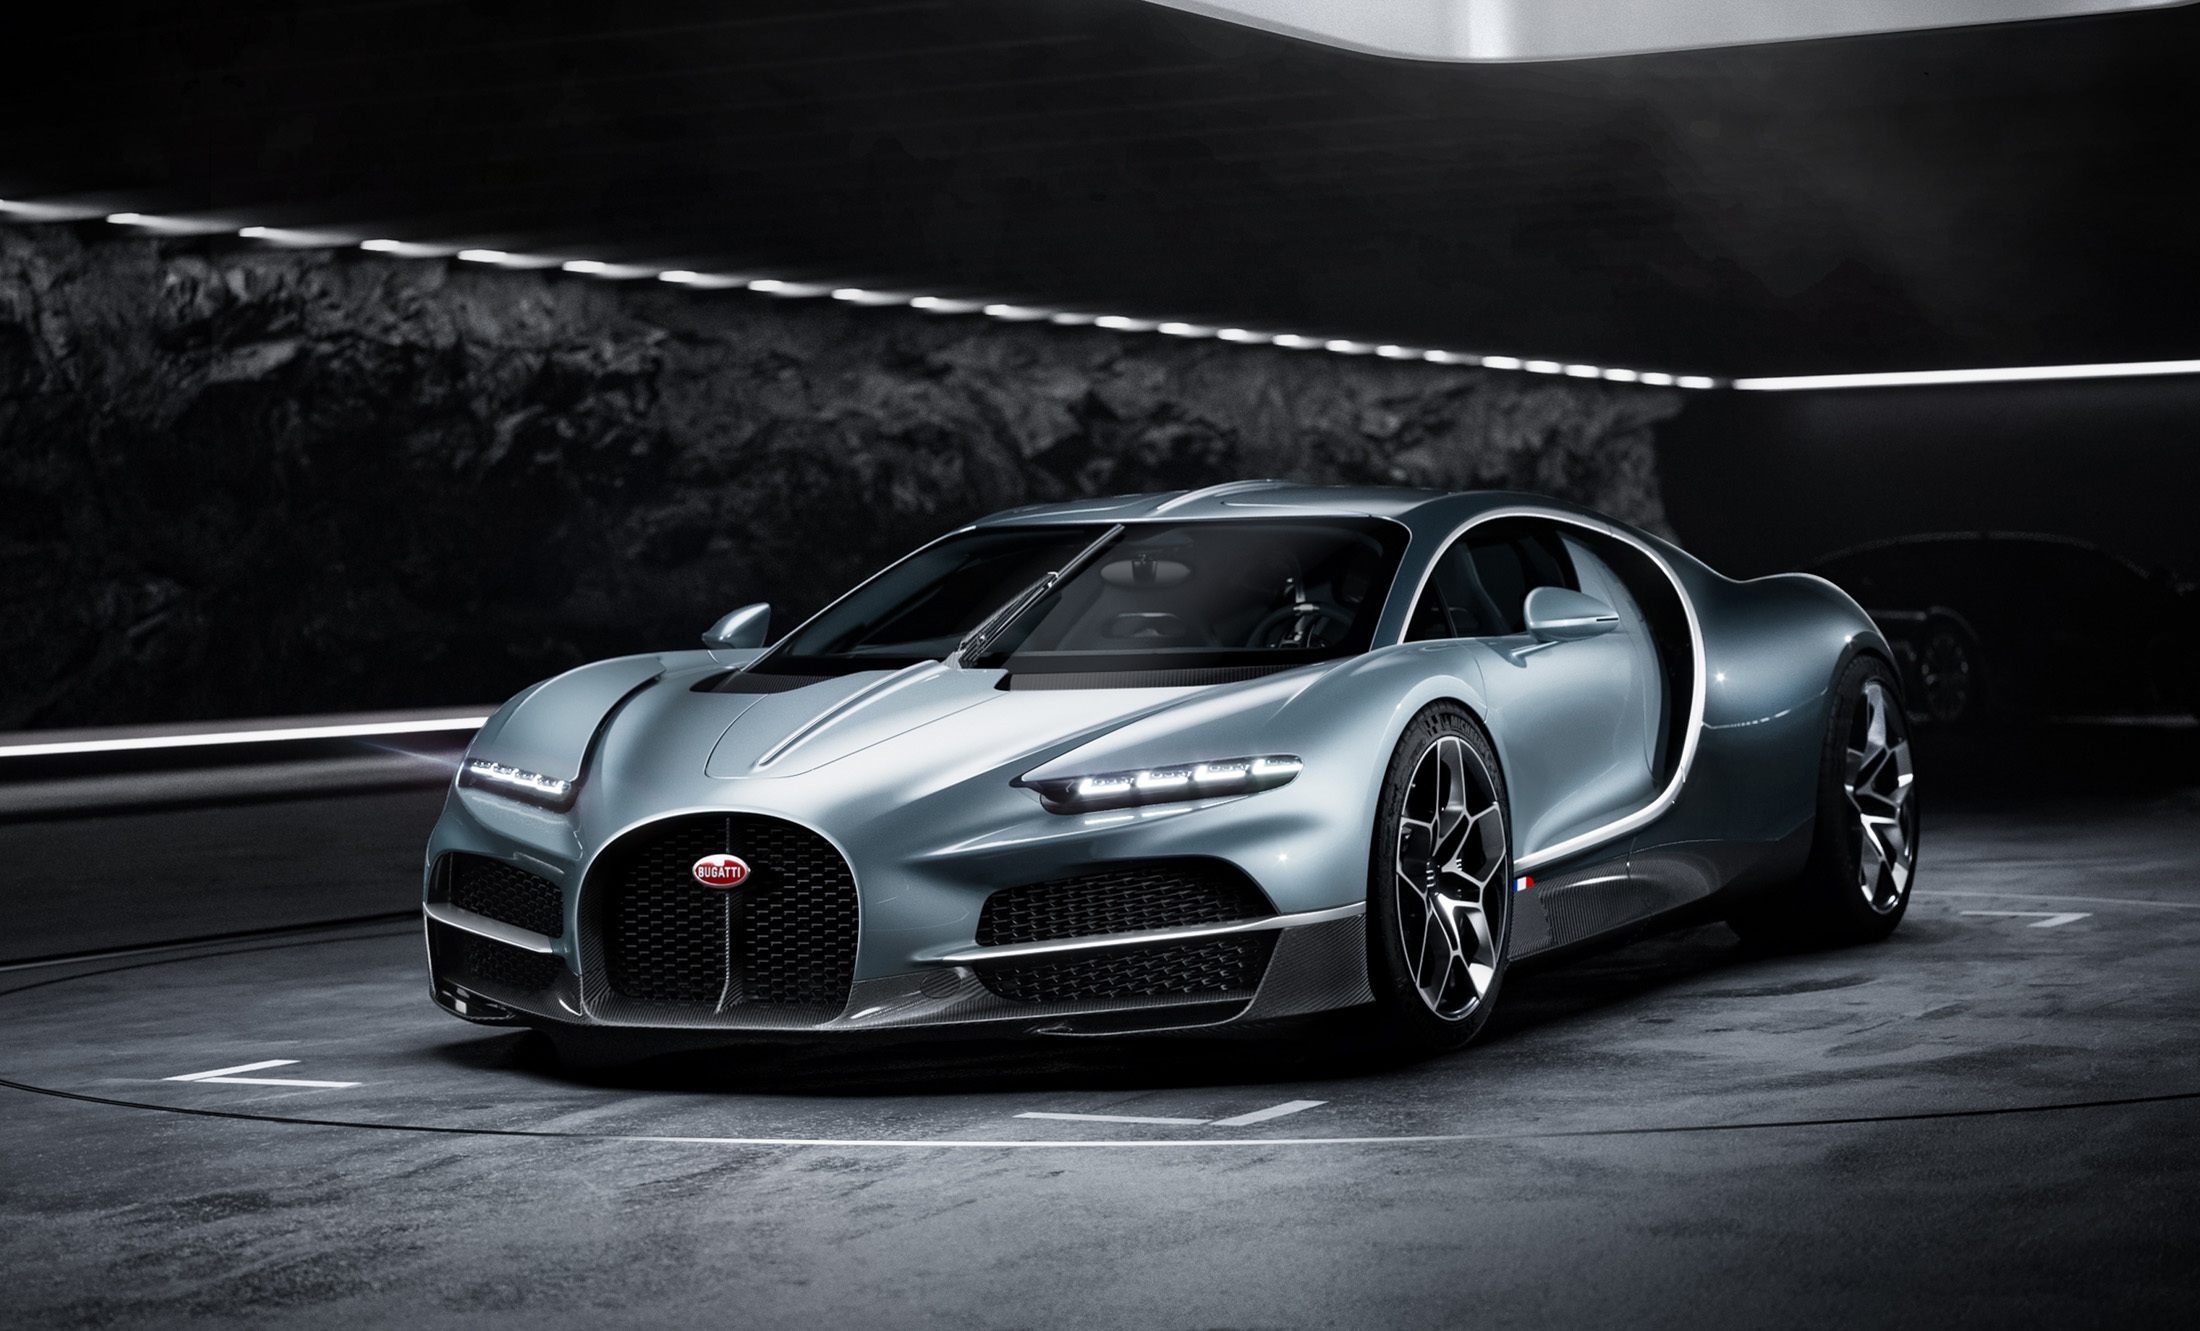 Bugatti đã hoàn tất việc sản xuất 500 xe Chiron, với chiếc cuối cùng lăn bánh khỏi nhà máy Molsheim vào tháng 5, 9 năm sau khi mẫu xe này ra mắt lần đầu vào năm 2015. Kế nhiệm Chiron sẽ là Tourbillon, với số lượng chỉ bằng một nửa - 250 chiếc. Dự kiến những khách hàng đầu tiên sẽ nhận xe vào năm 2026.